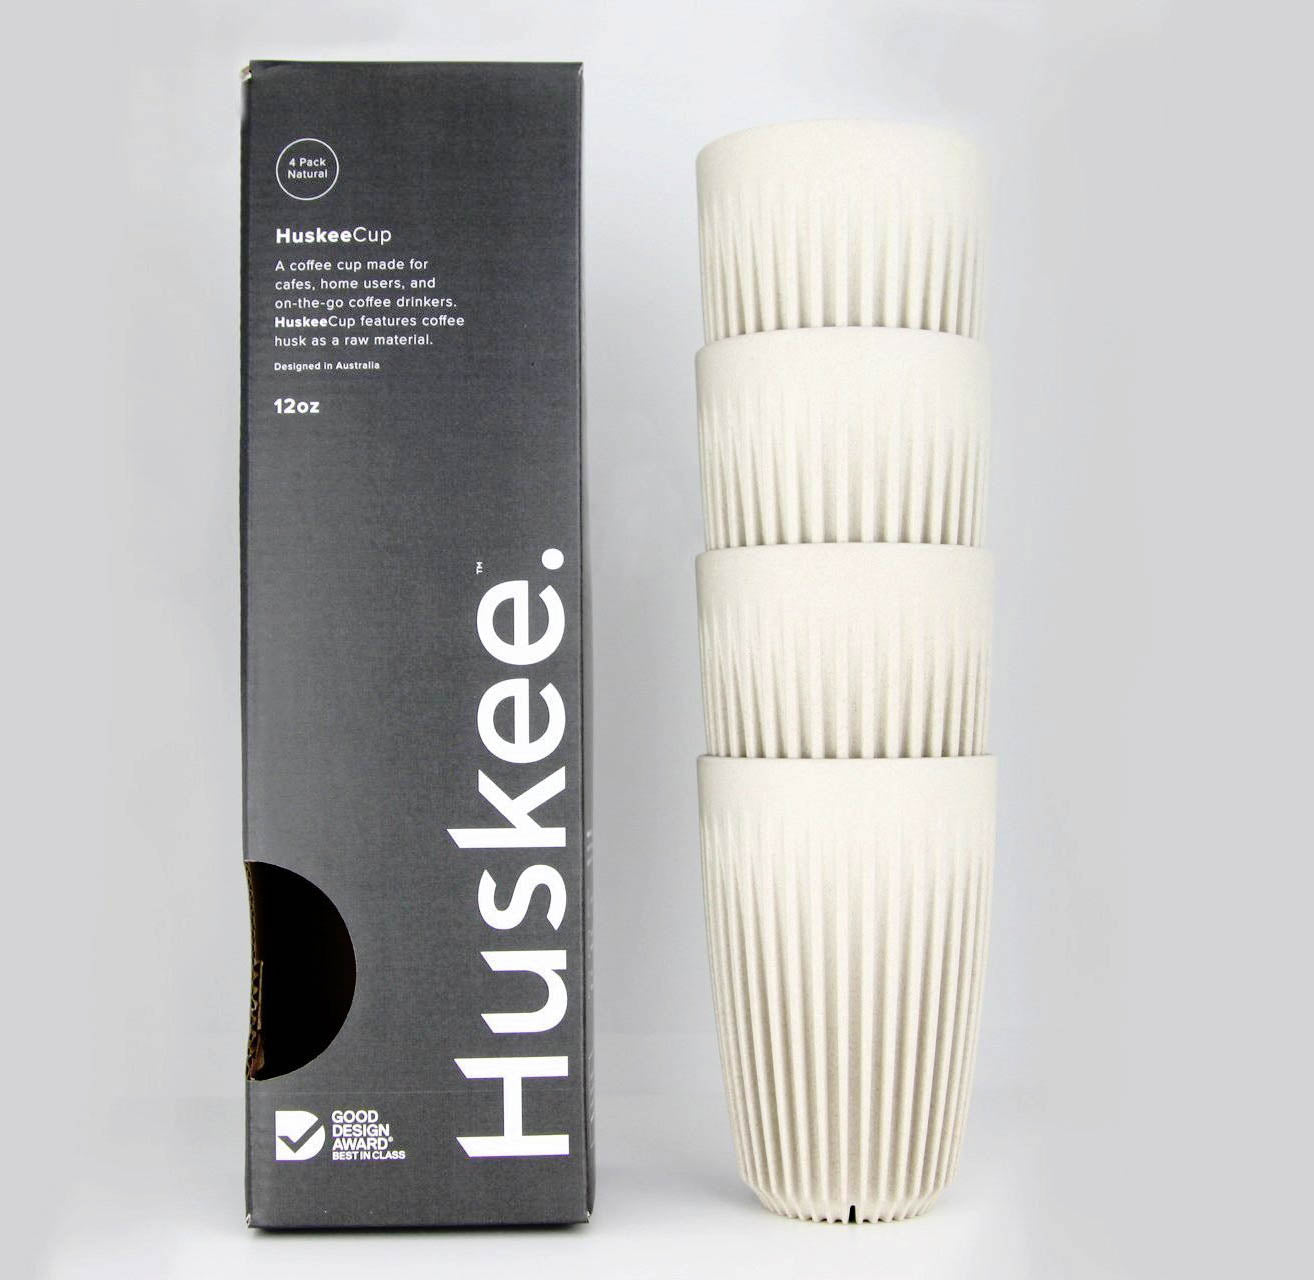 Huskee 咖啡杯 4 件装 [12 盎司/360 毫升]（木炭/自然色）